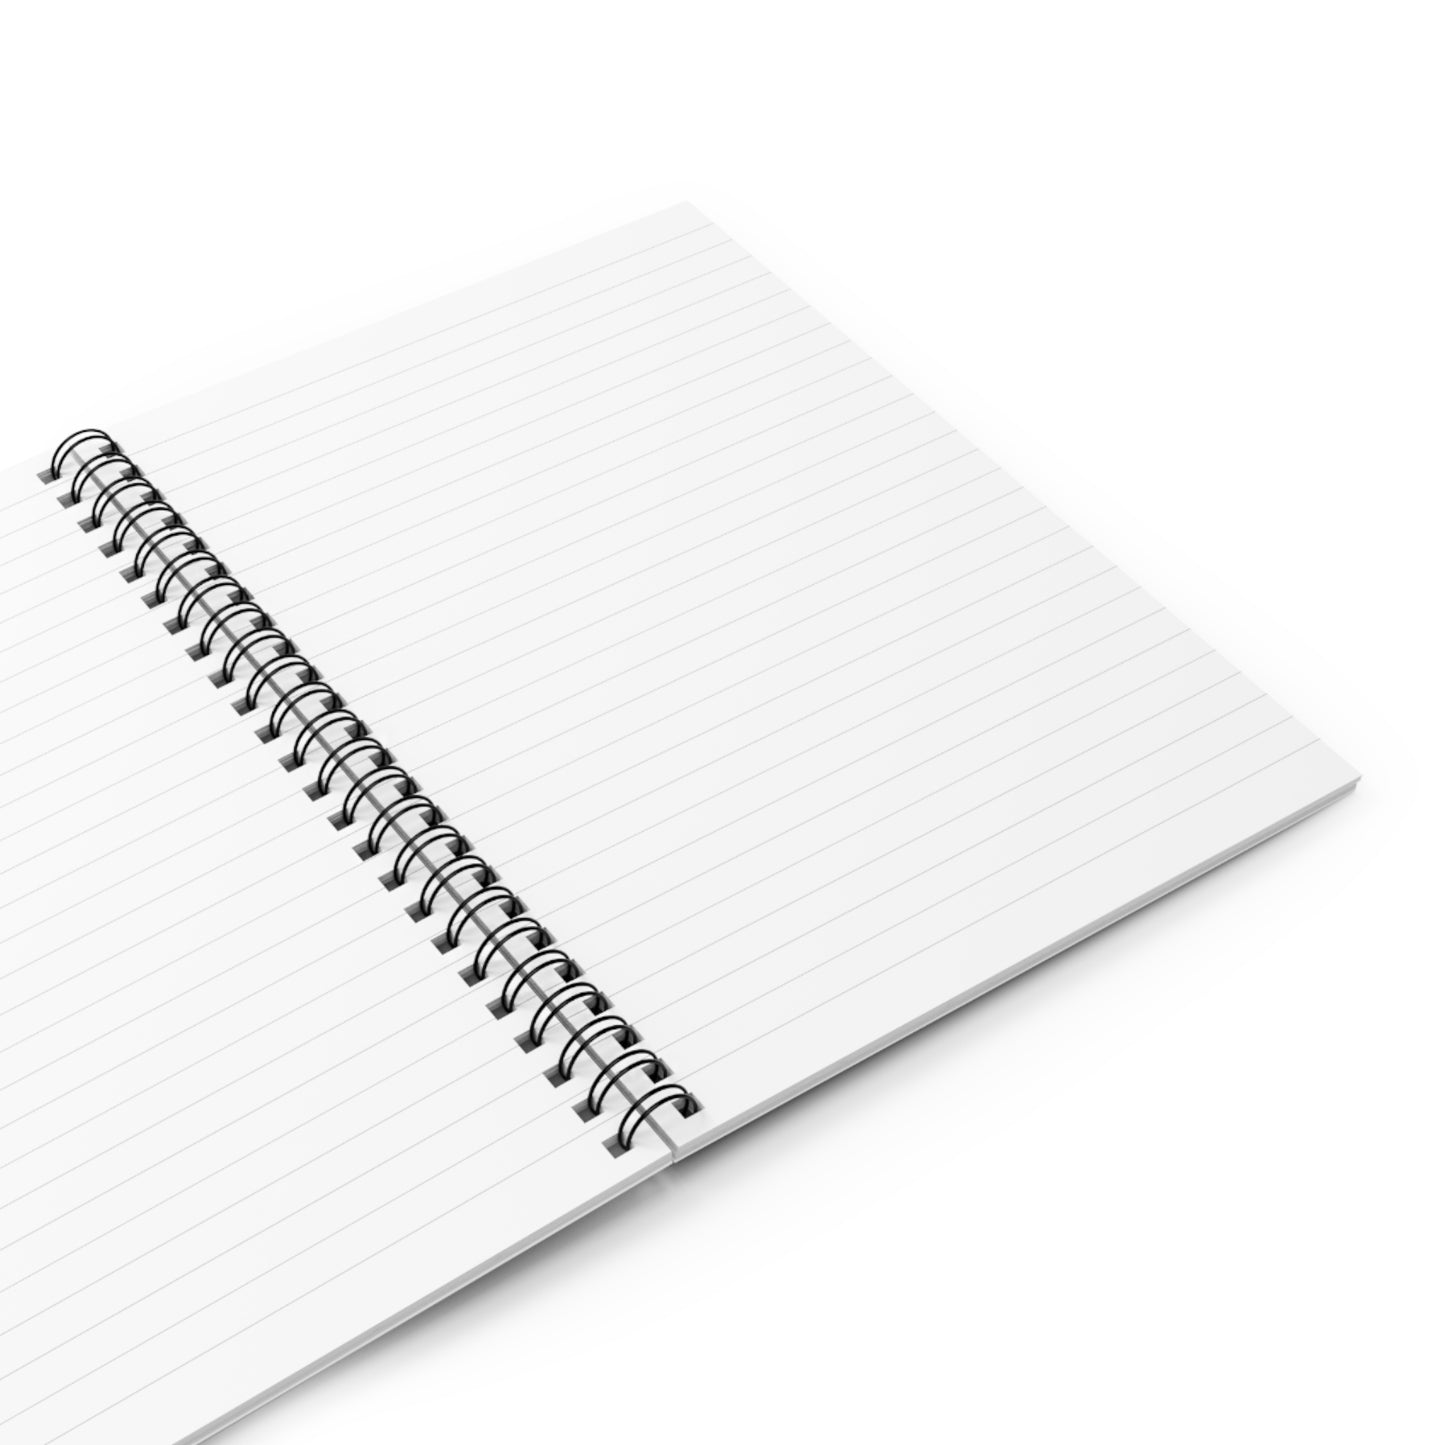 highDEAS™ Spiral Notebook - Ruled Line